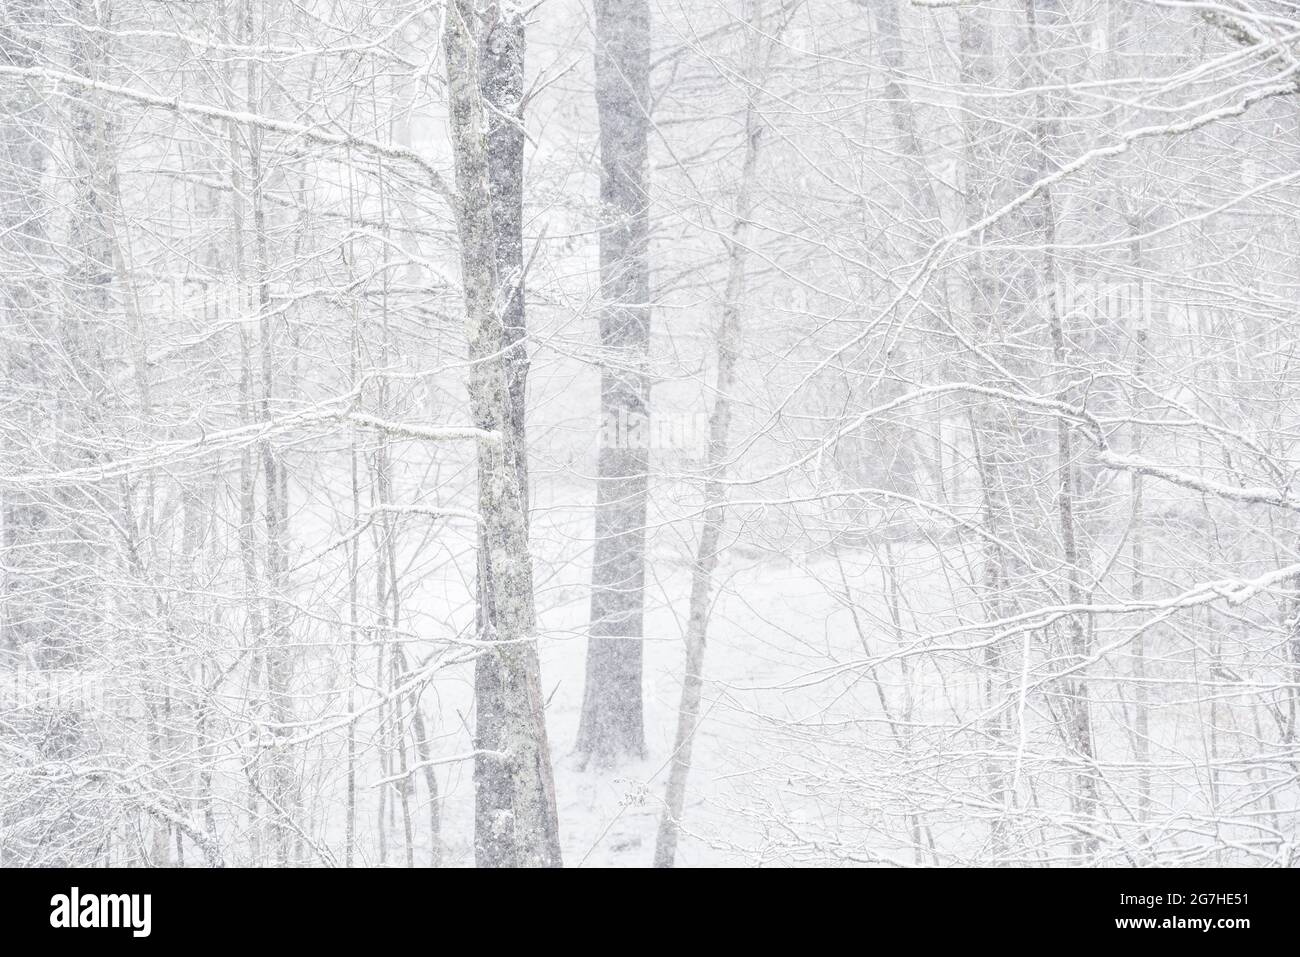 La nieve se filtra en una escena de invierno boscosa en Vermont, EE.UU. Foto de stock